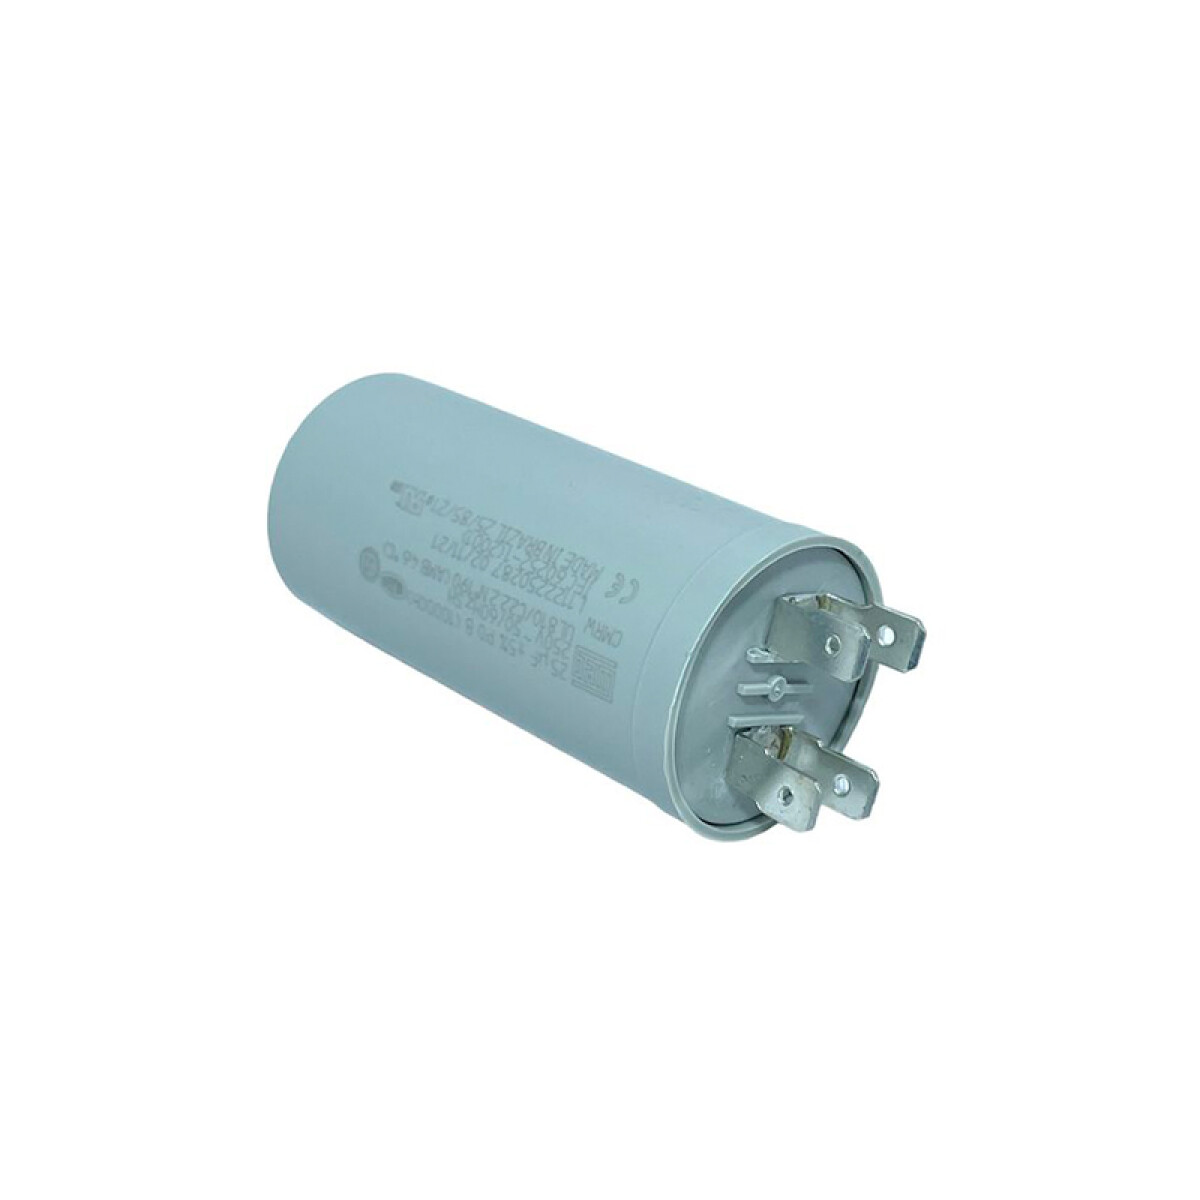 Condensador 250V 25 UF, CMRW25 p/iluminación - WE0625 